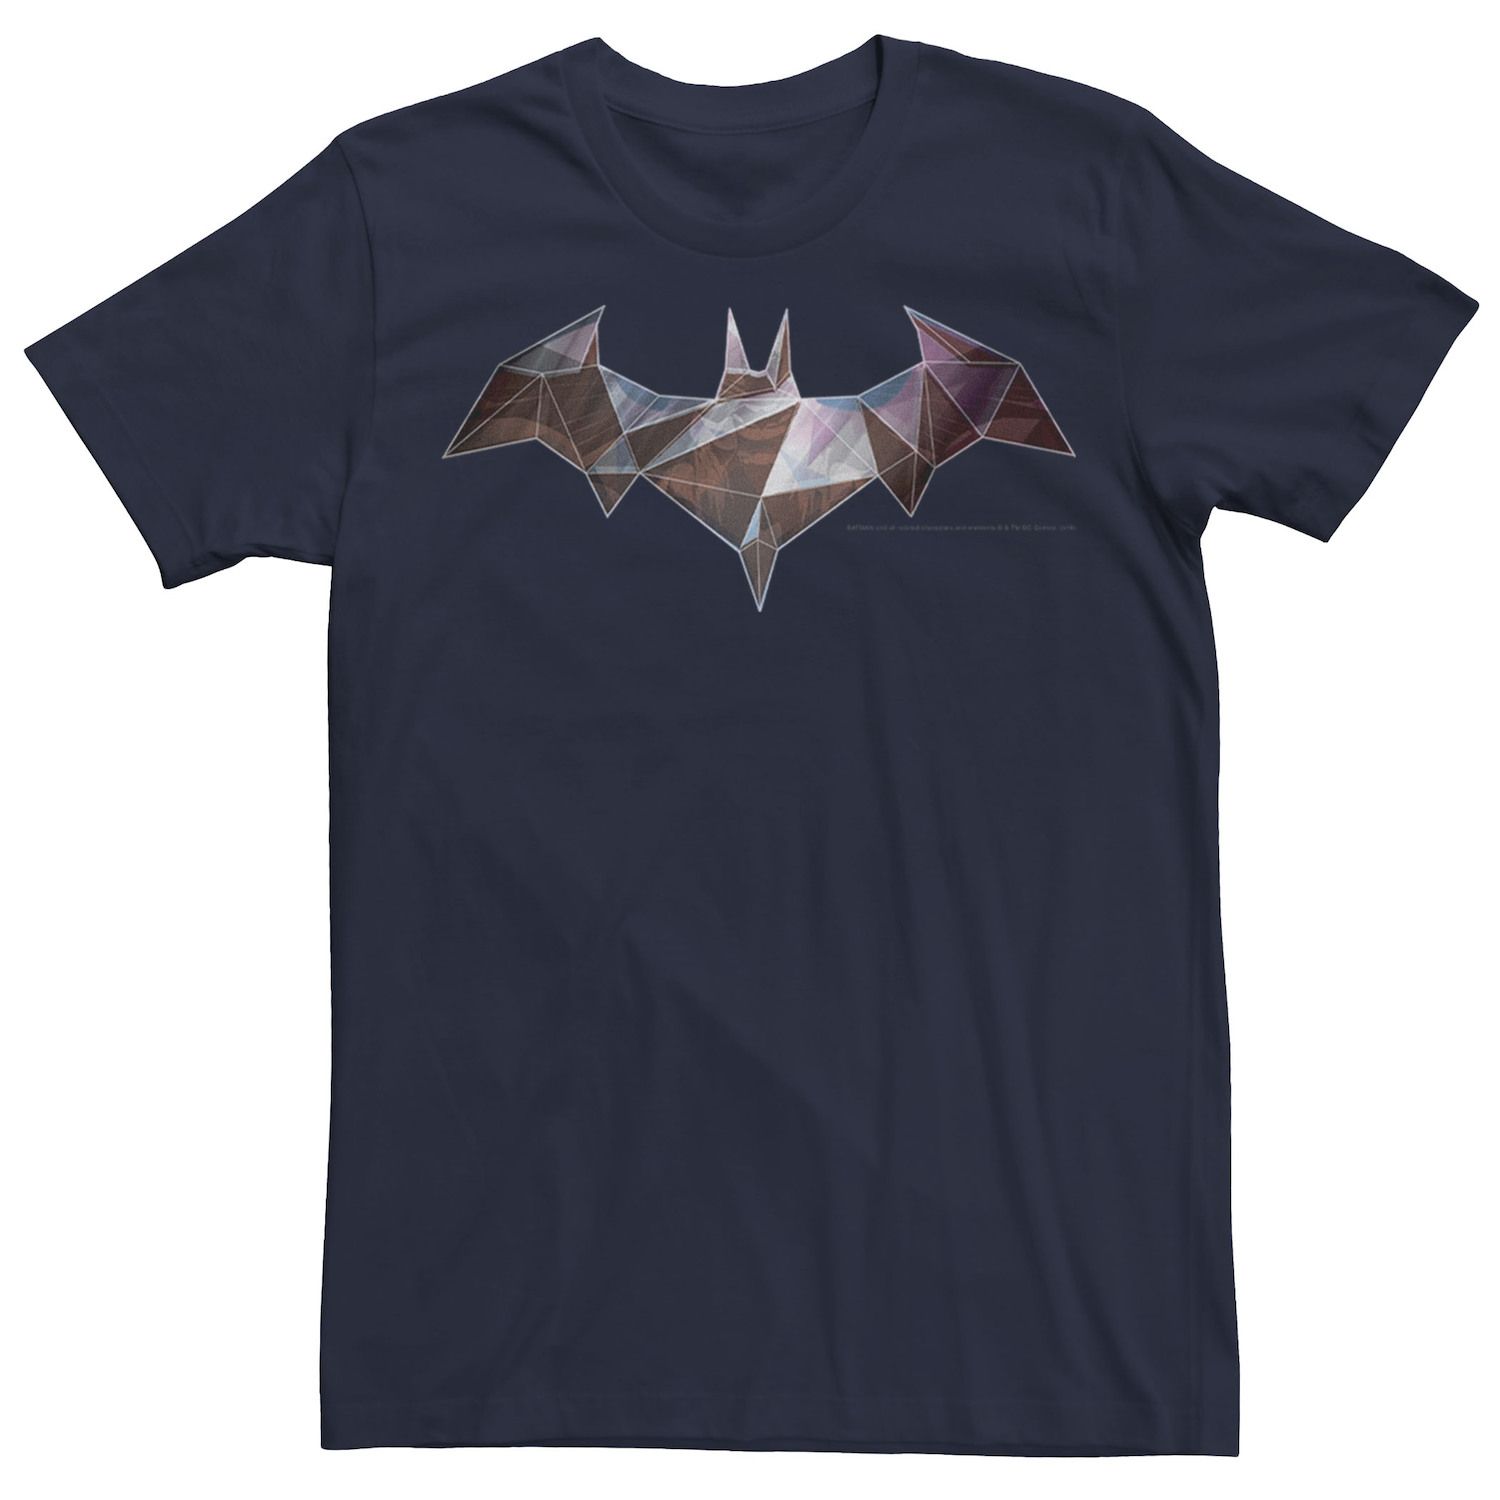 Мужская классическая футболка с геометрическим логотипом Бэтменом и Бэтменом, Синяя DC Comics, синий